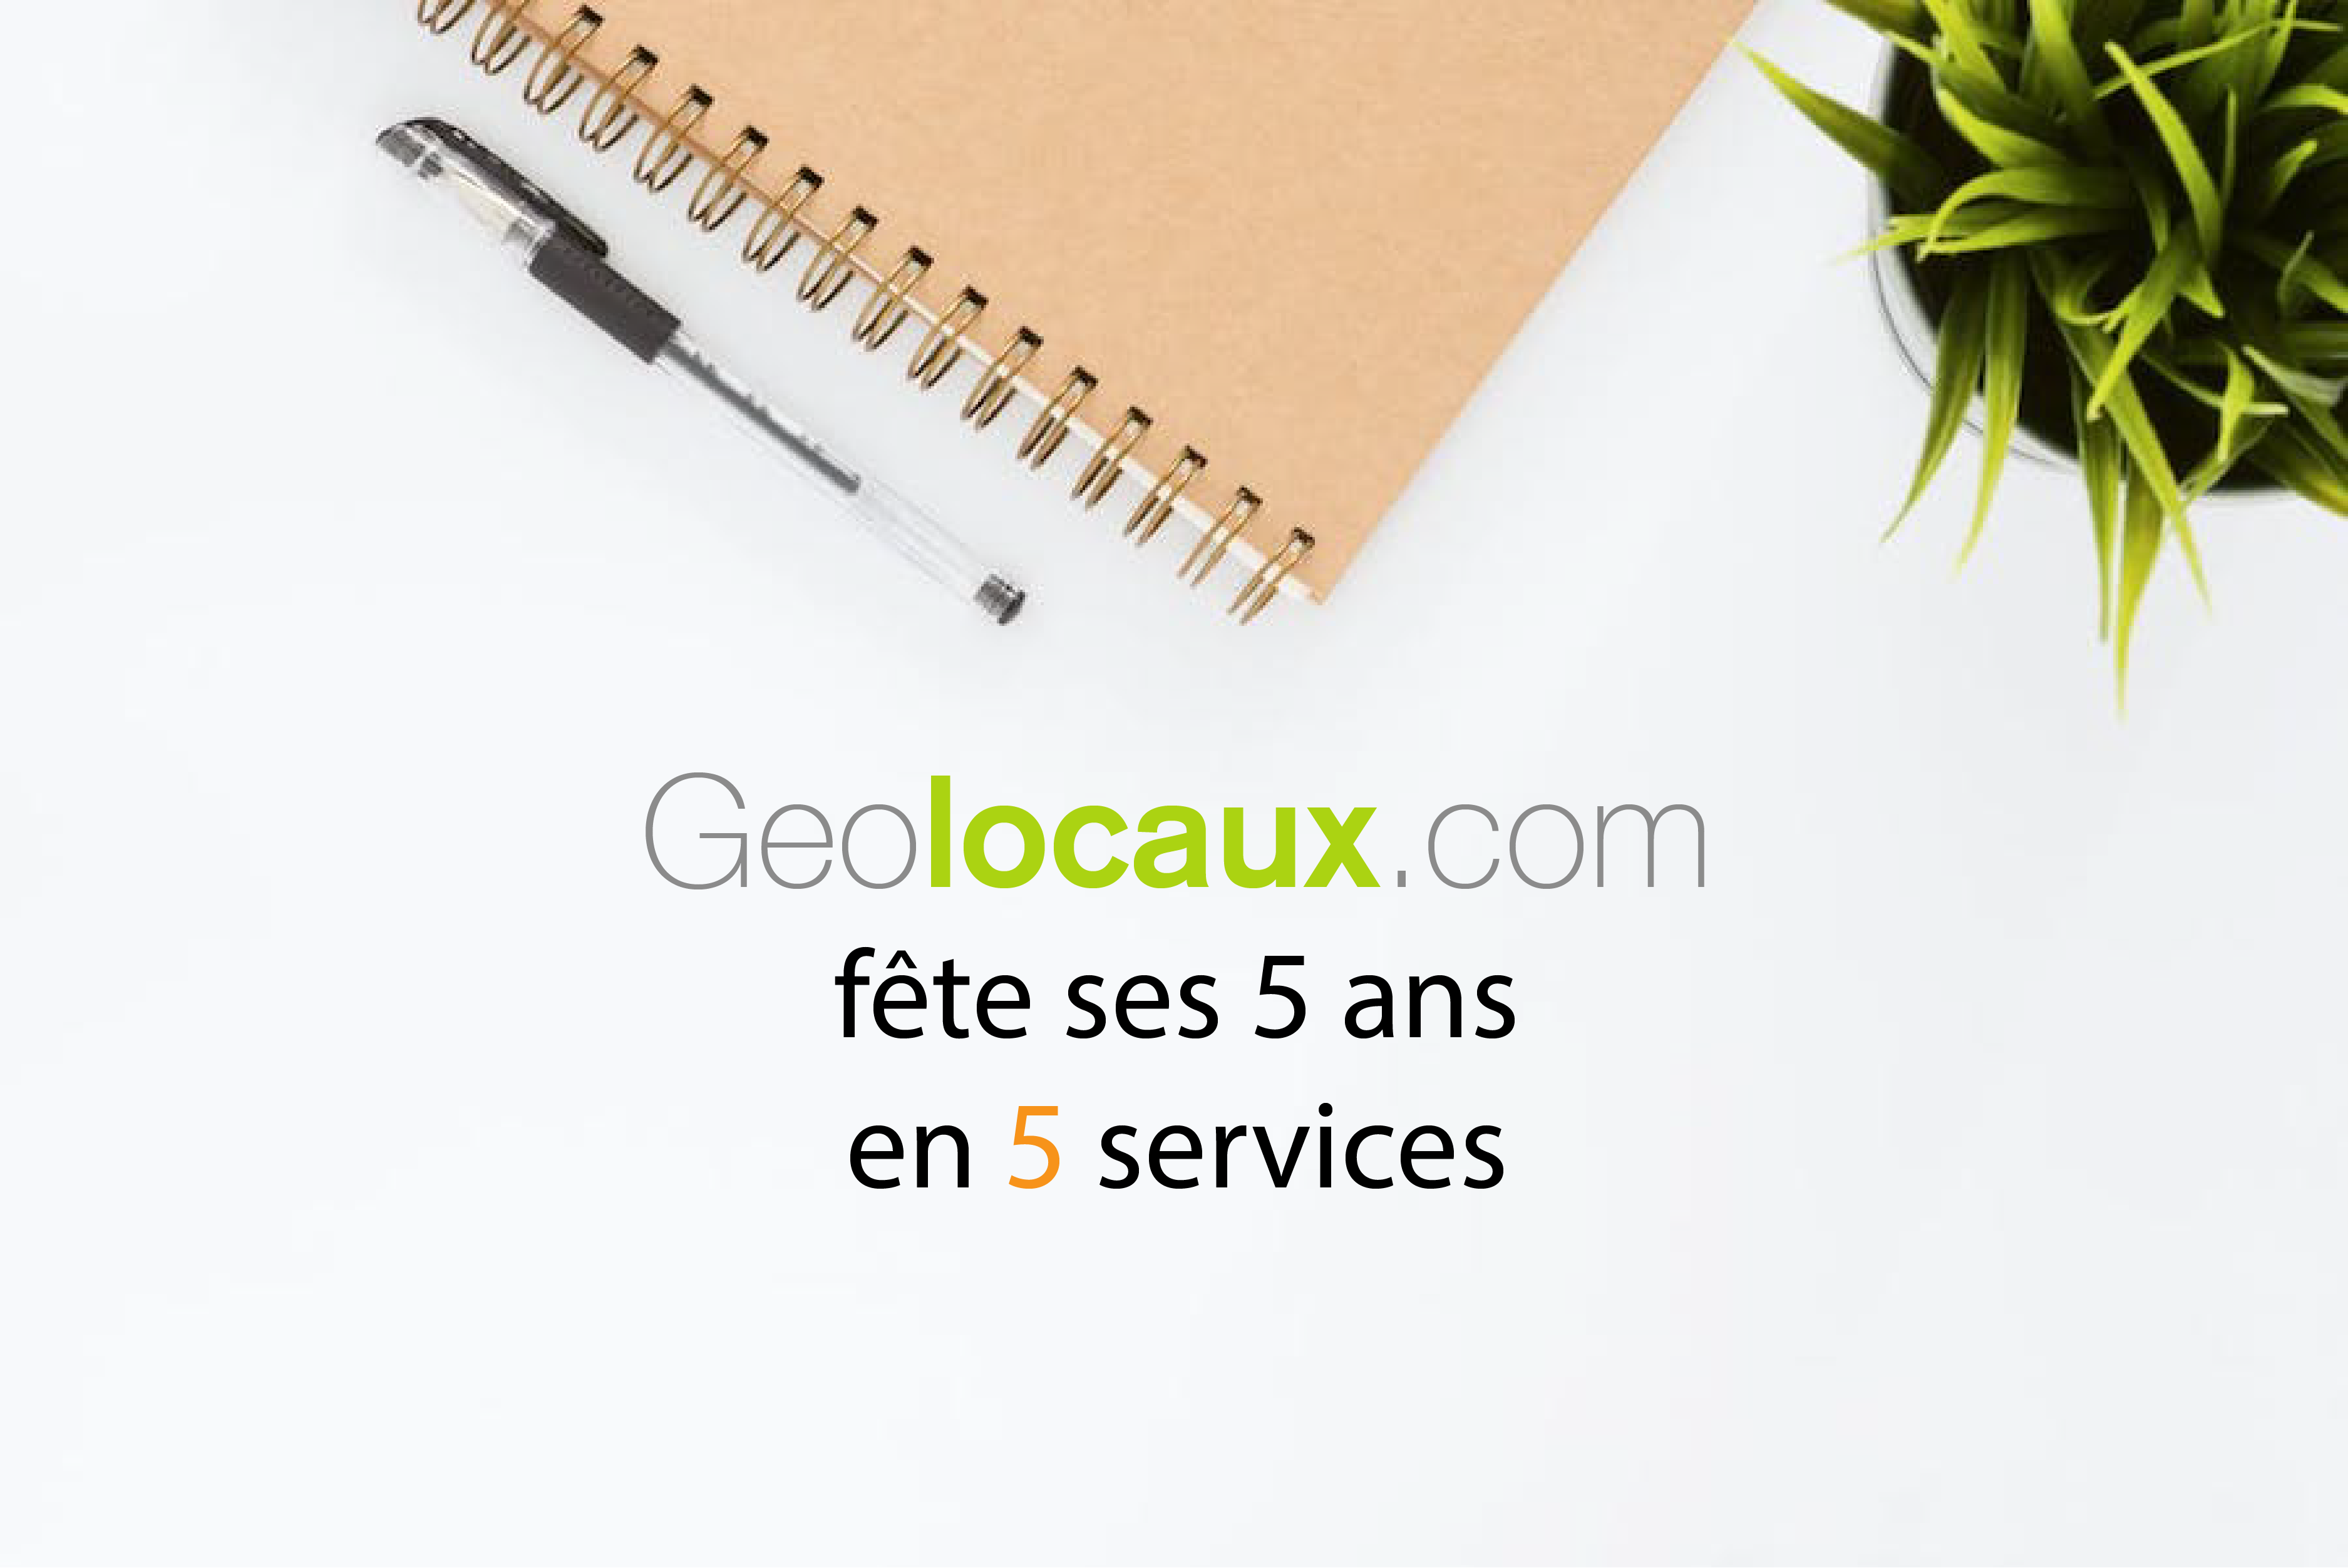 Geolocaux.com